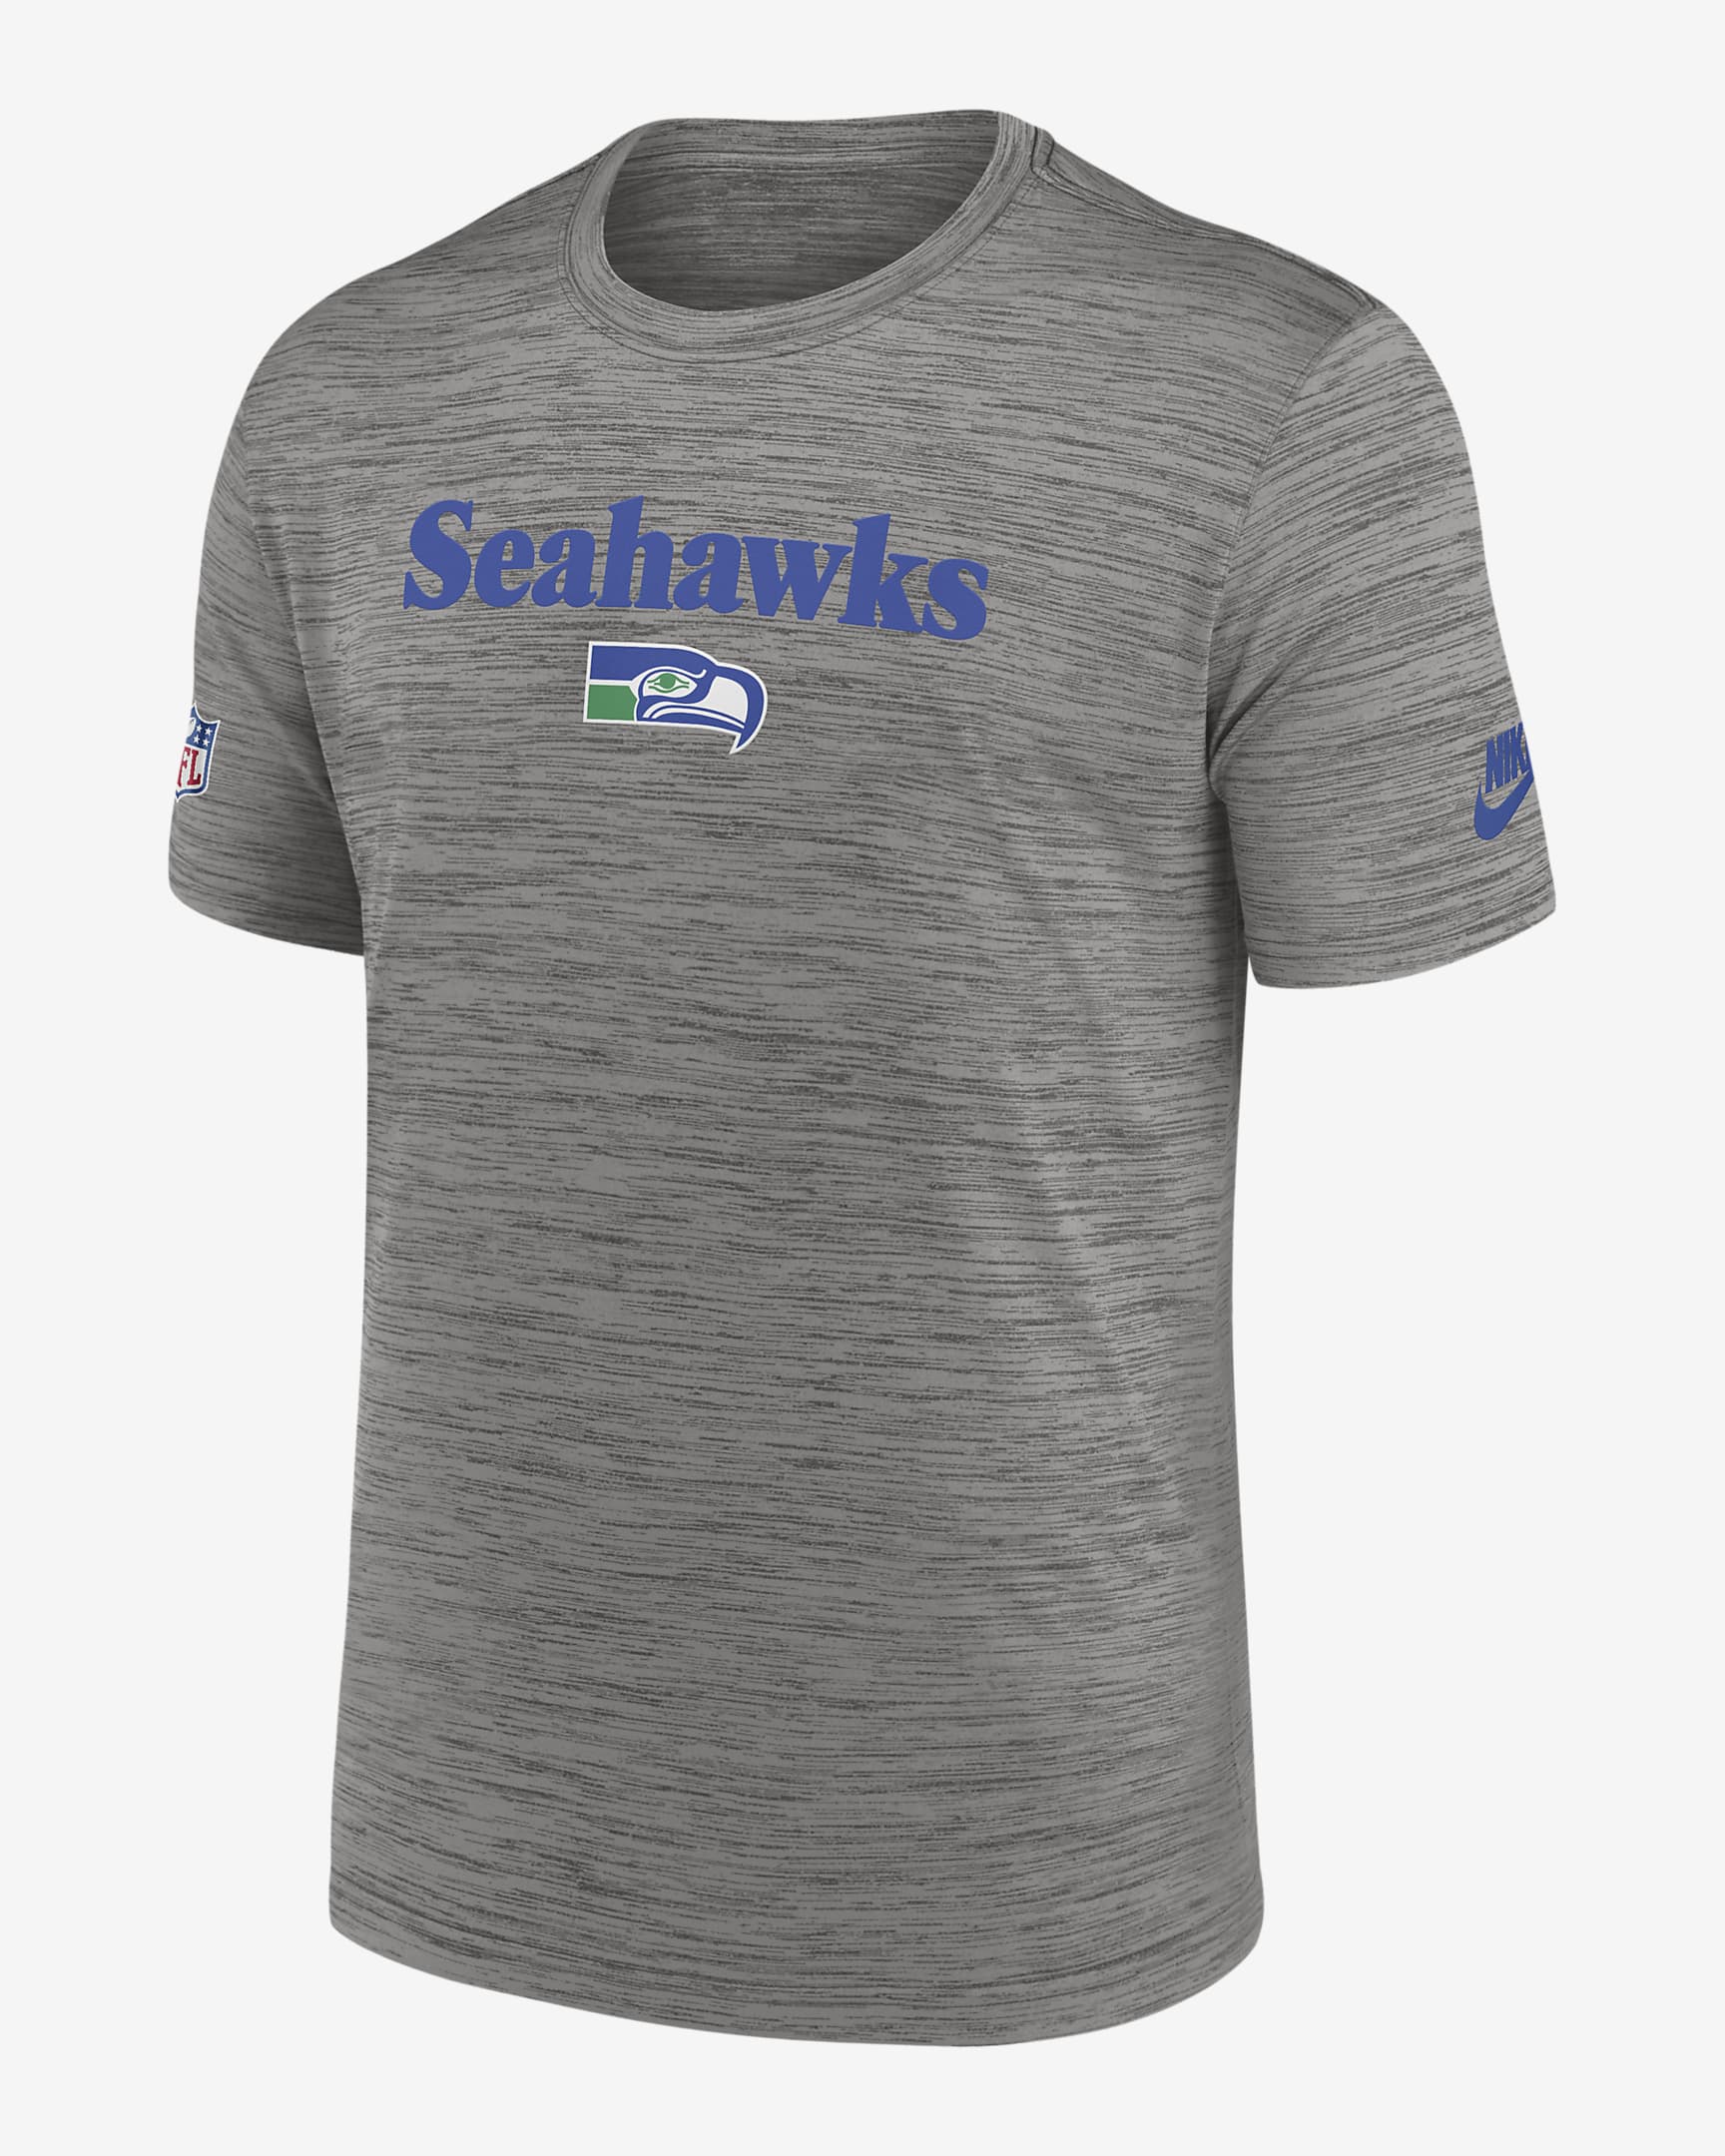 Nike Dri-FIT Team (NFL Seattle Seahawks) Men's T-Shirt. Nike.com